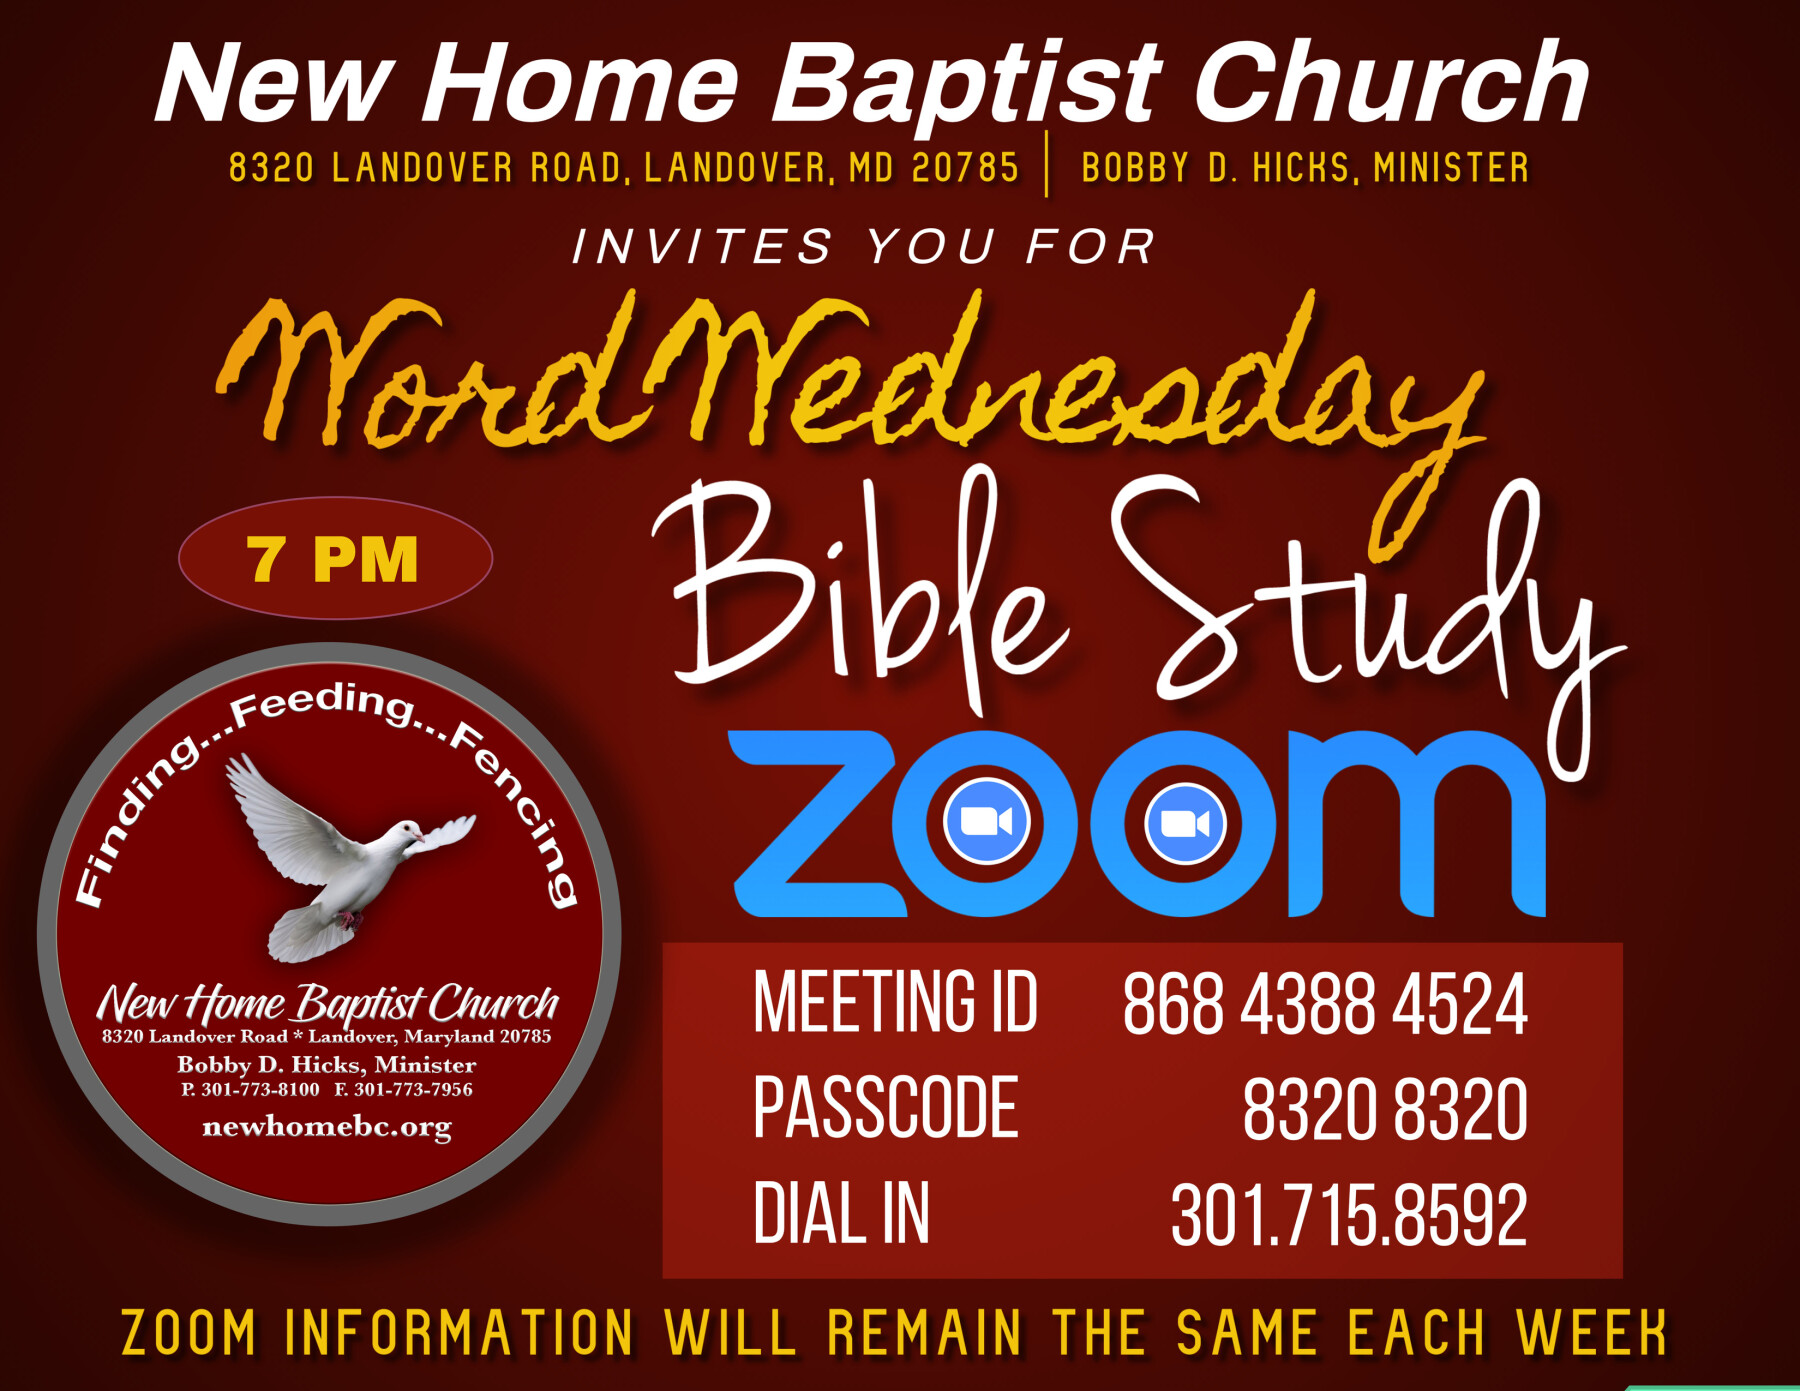 Word Wednesday Zoom Bible Study @ 7PM